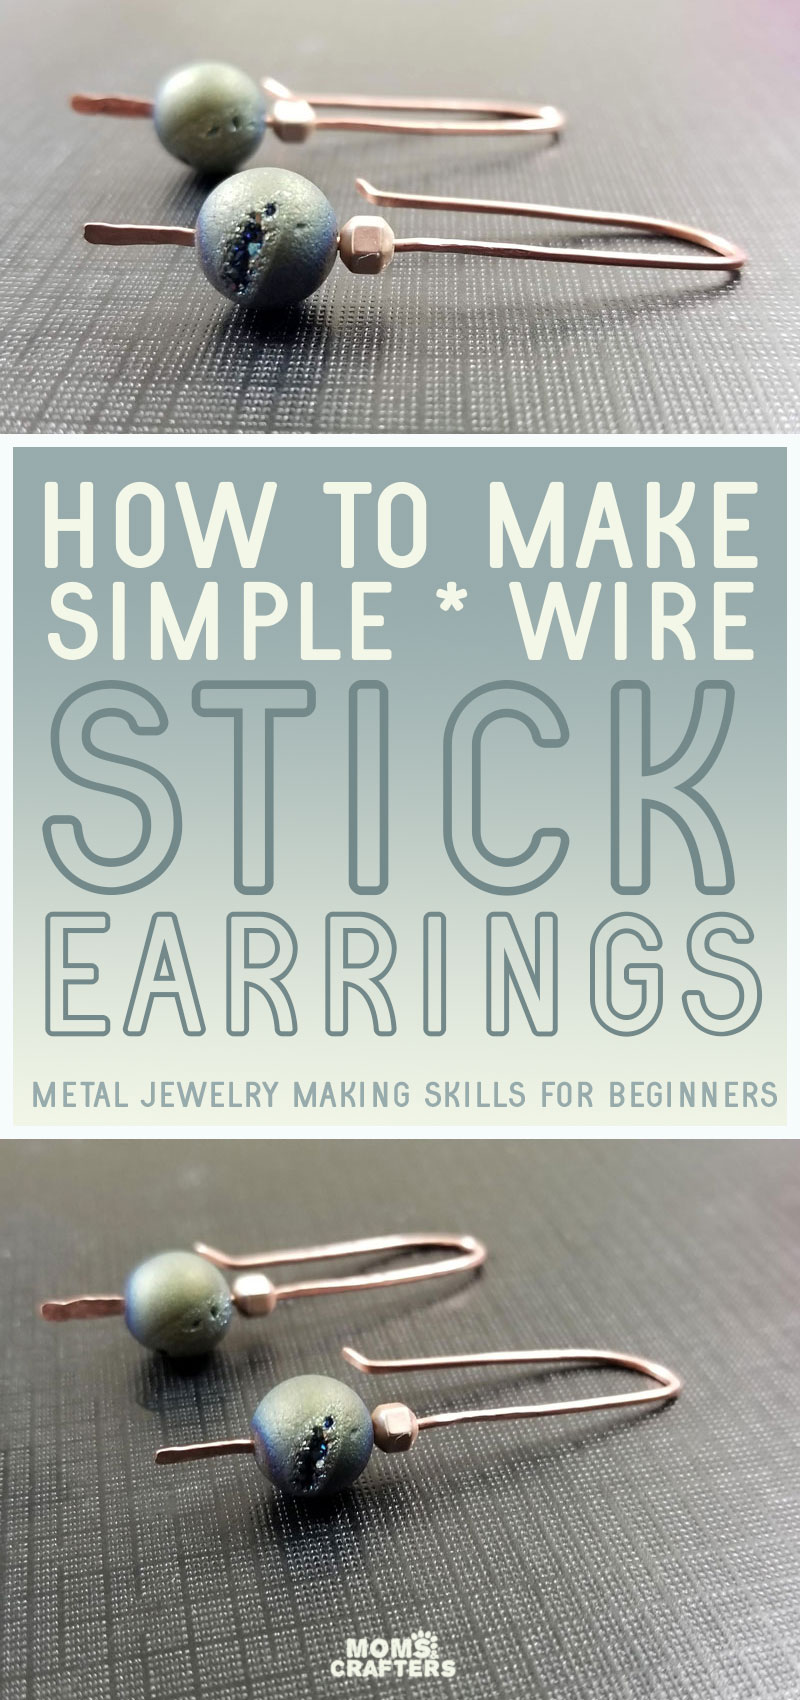 Learn how to make simple diy metal earrings - easy stick earrings for beginners